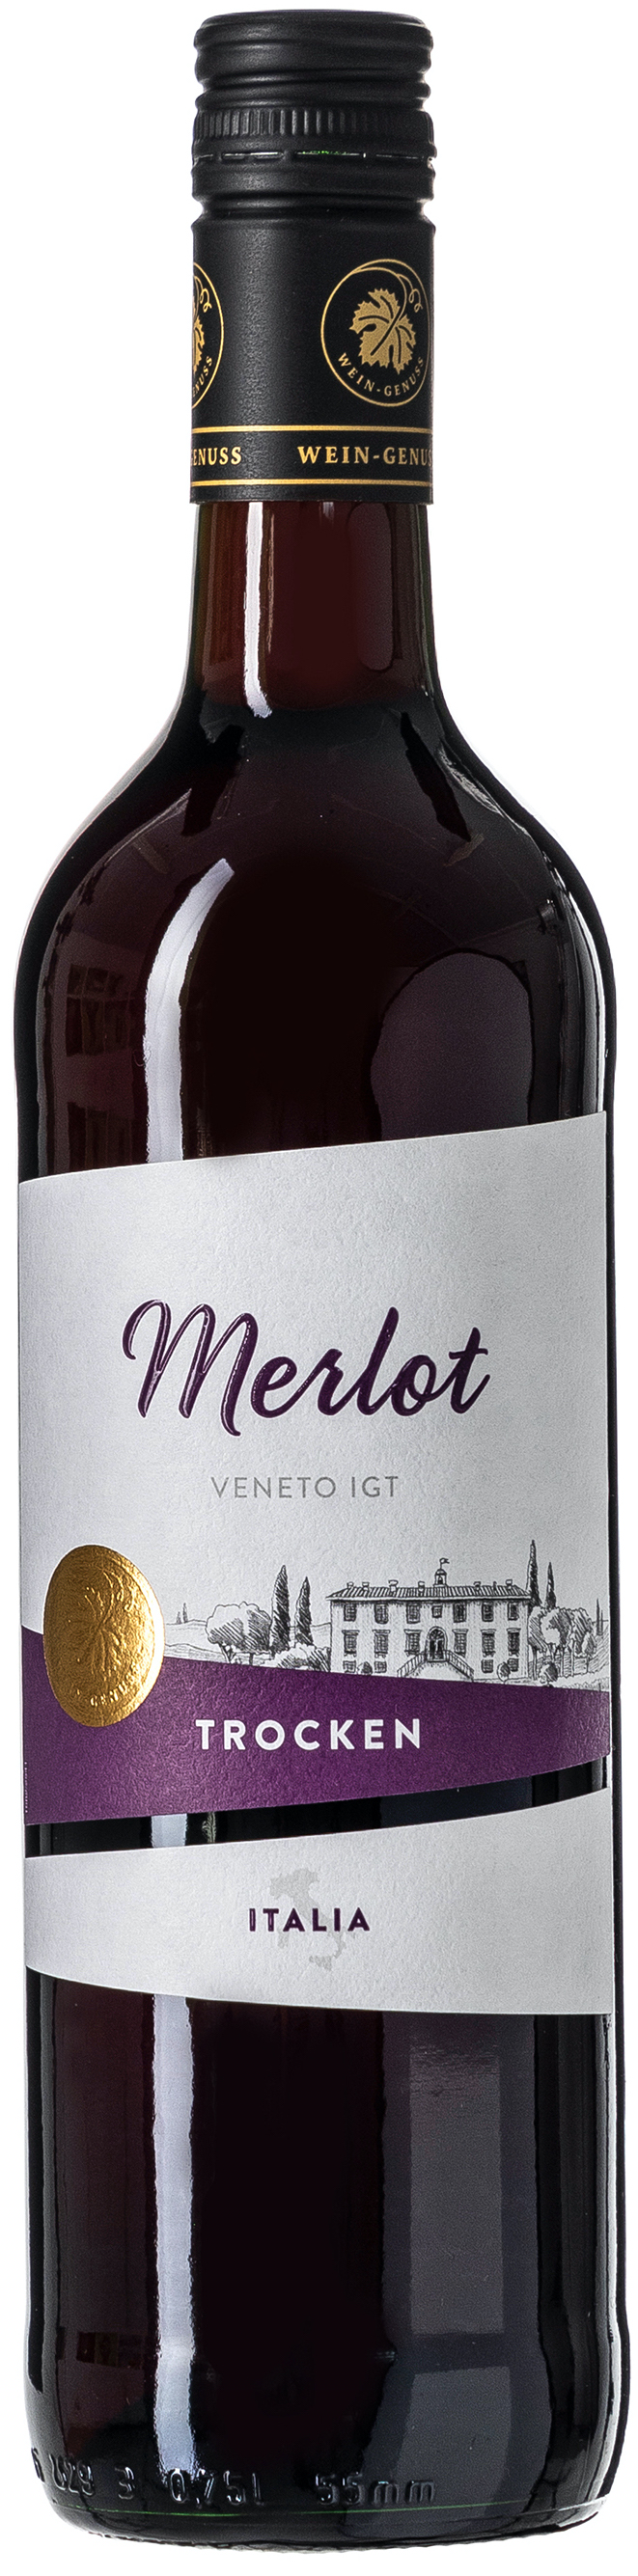 Wein-Genuss Merlot trocken 11,5% vol. 0,75L